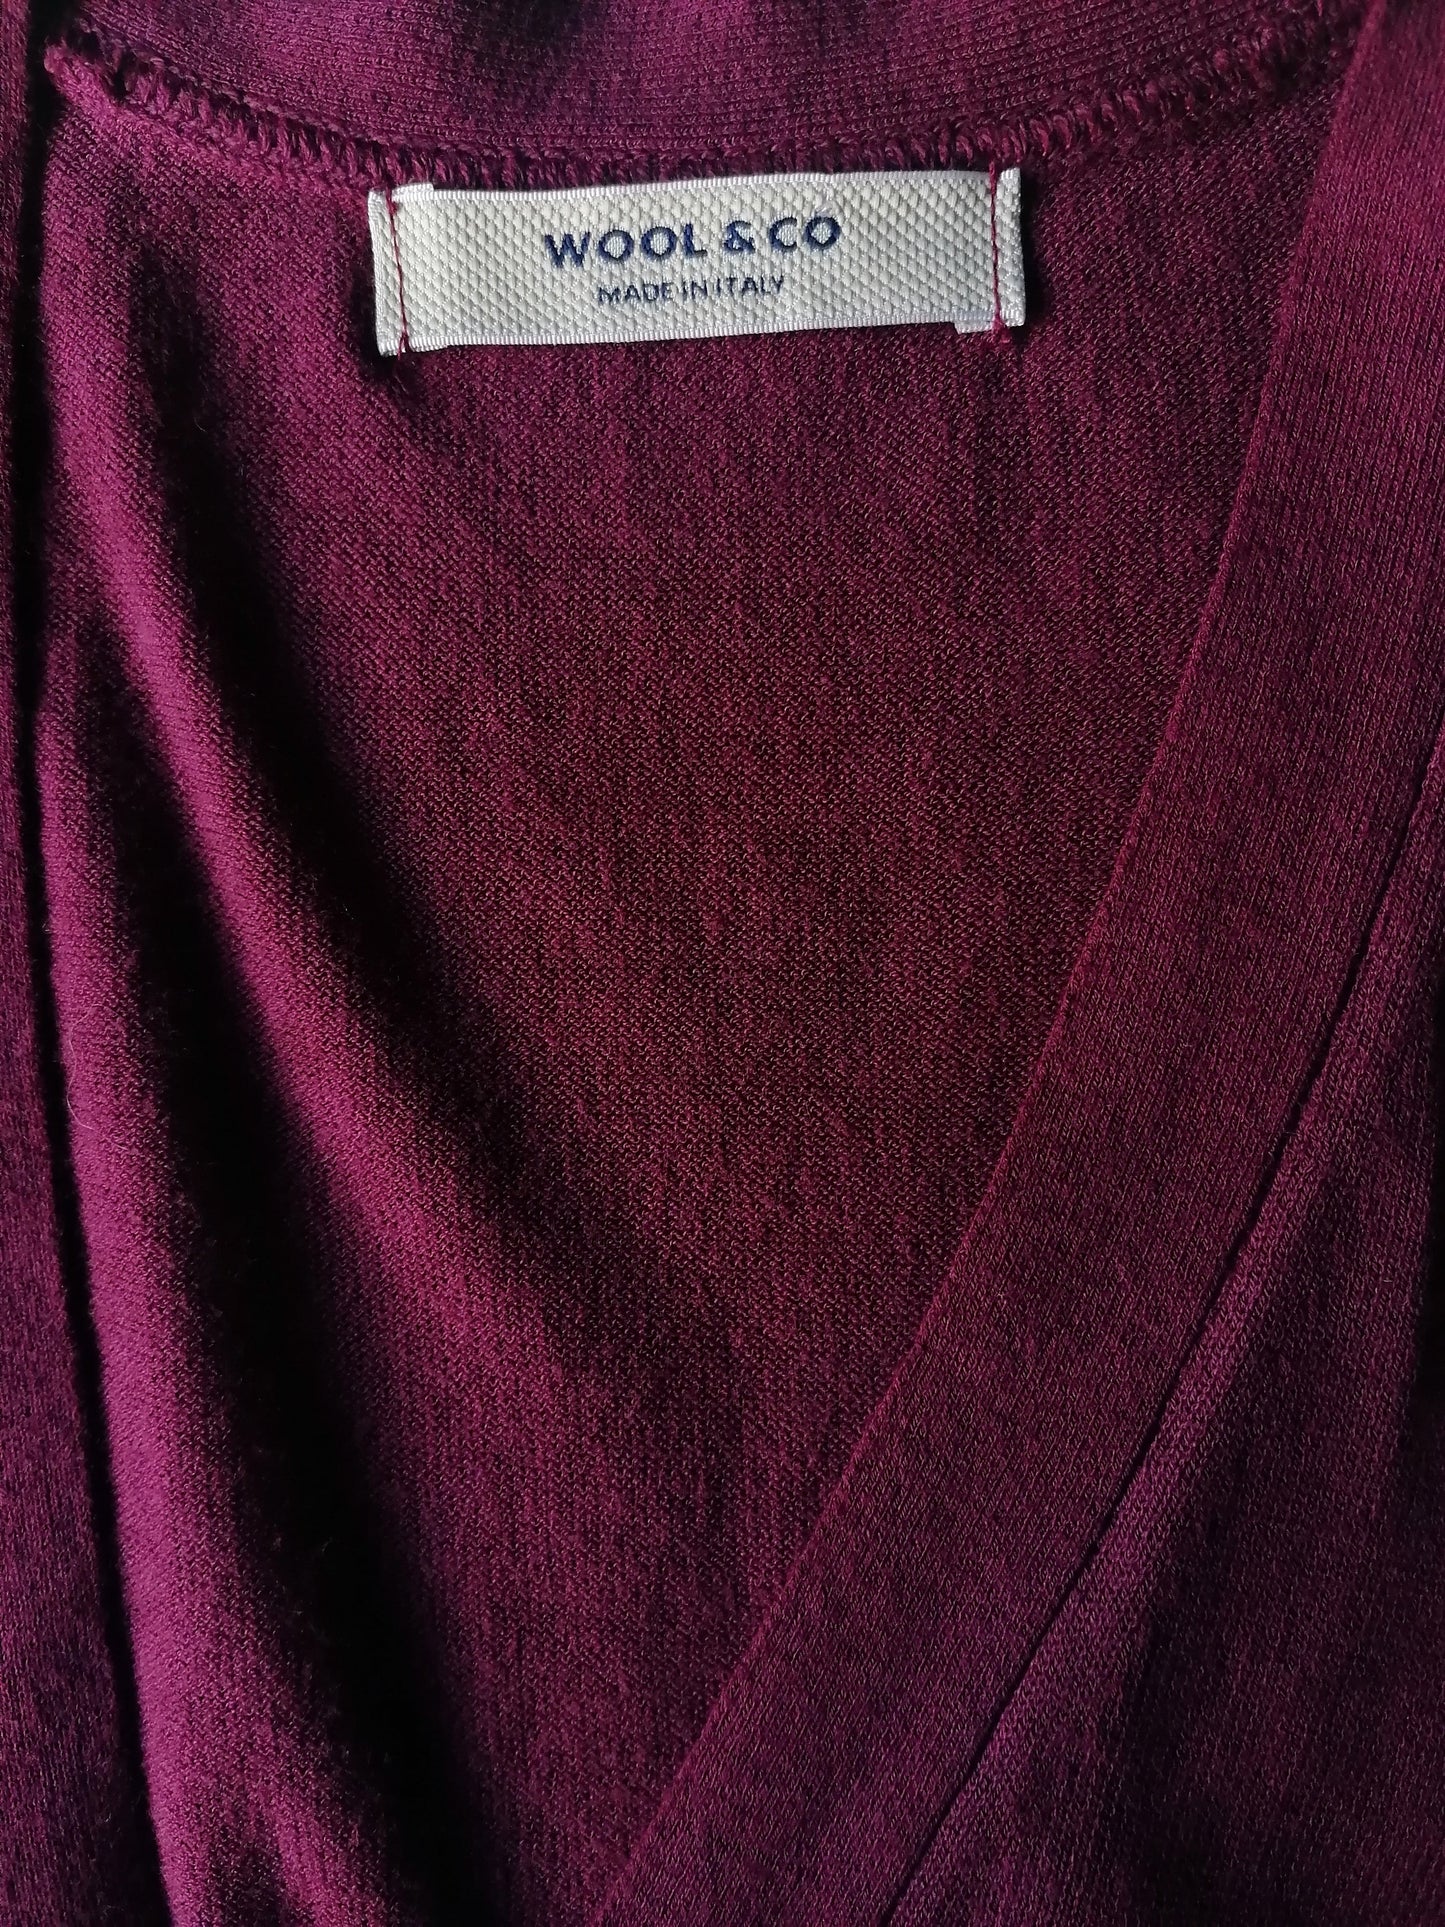 Wool & Co Cotton Wistcoat. Burdeos de color. Tamaño S.